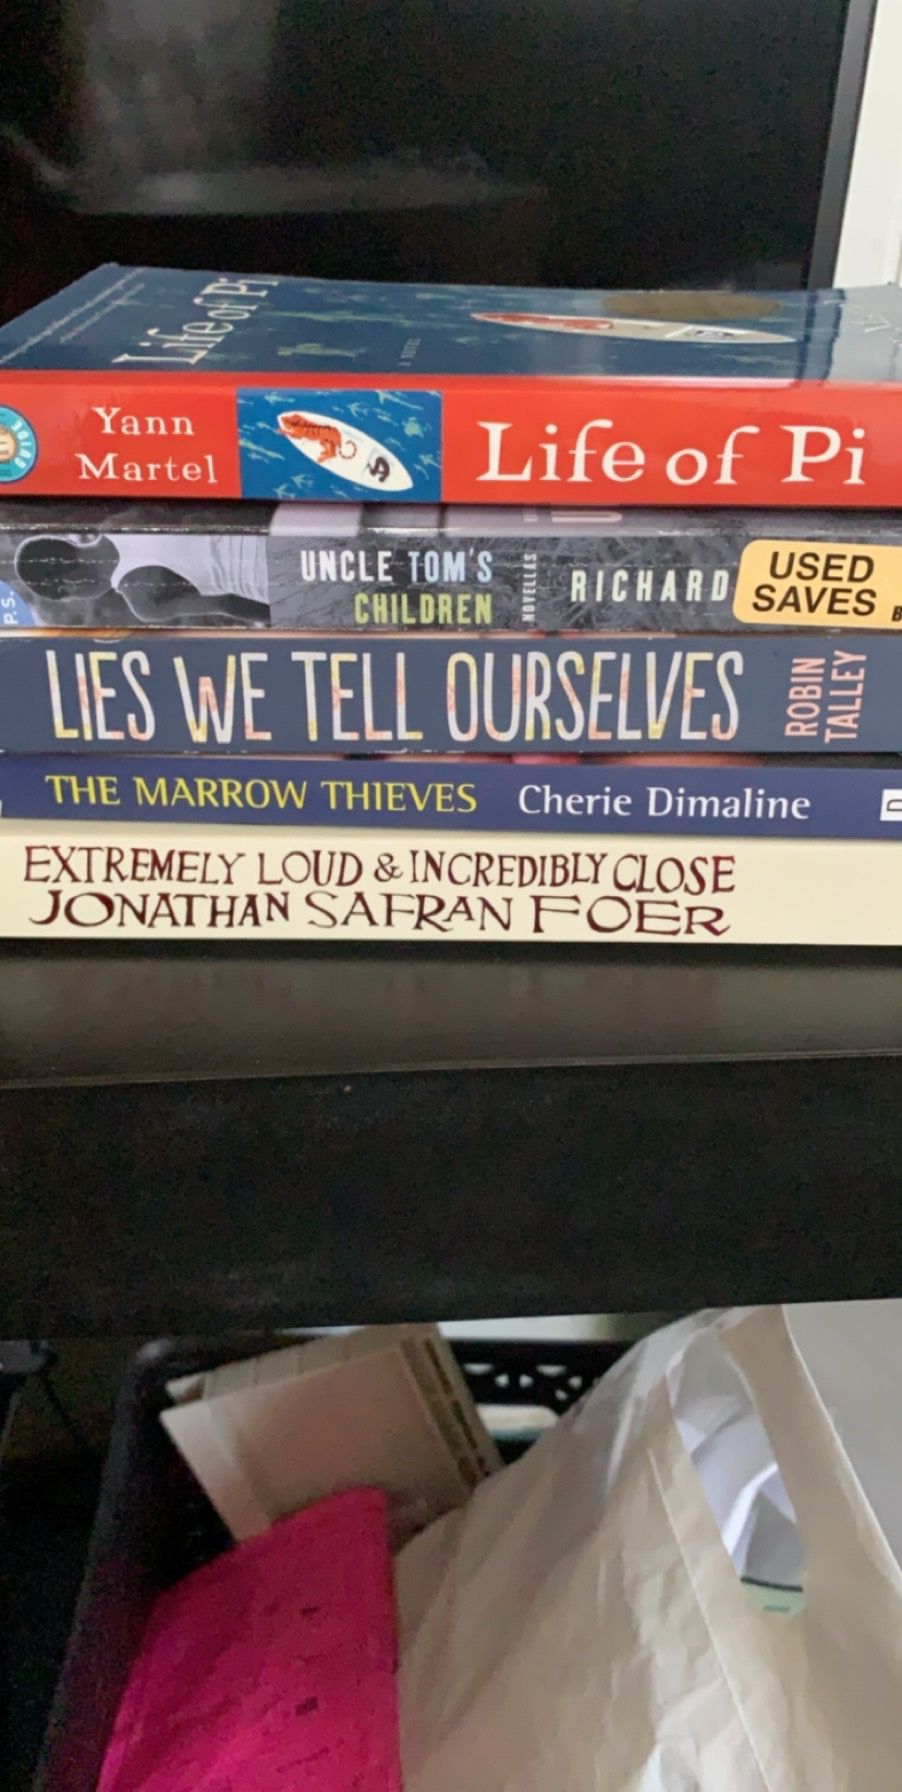 More books